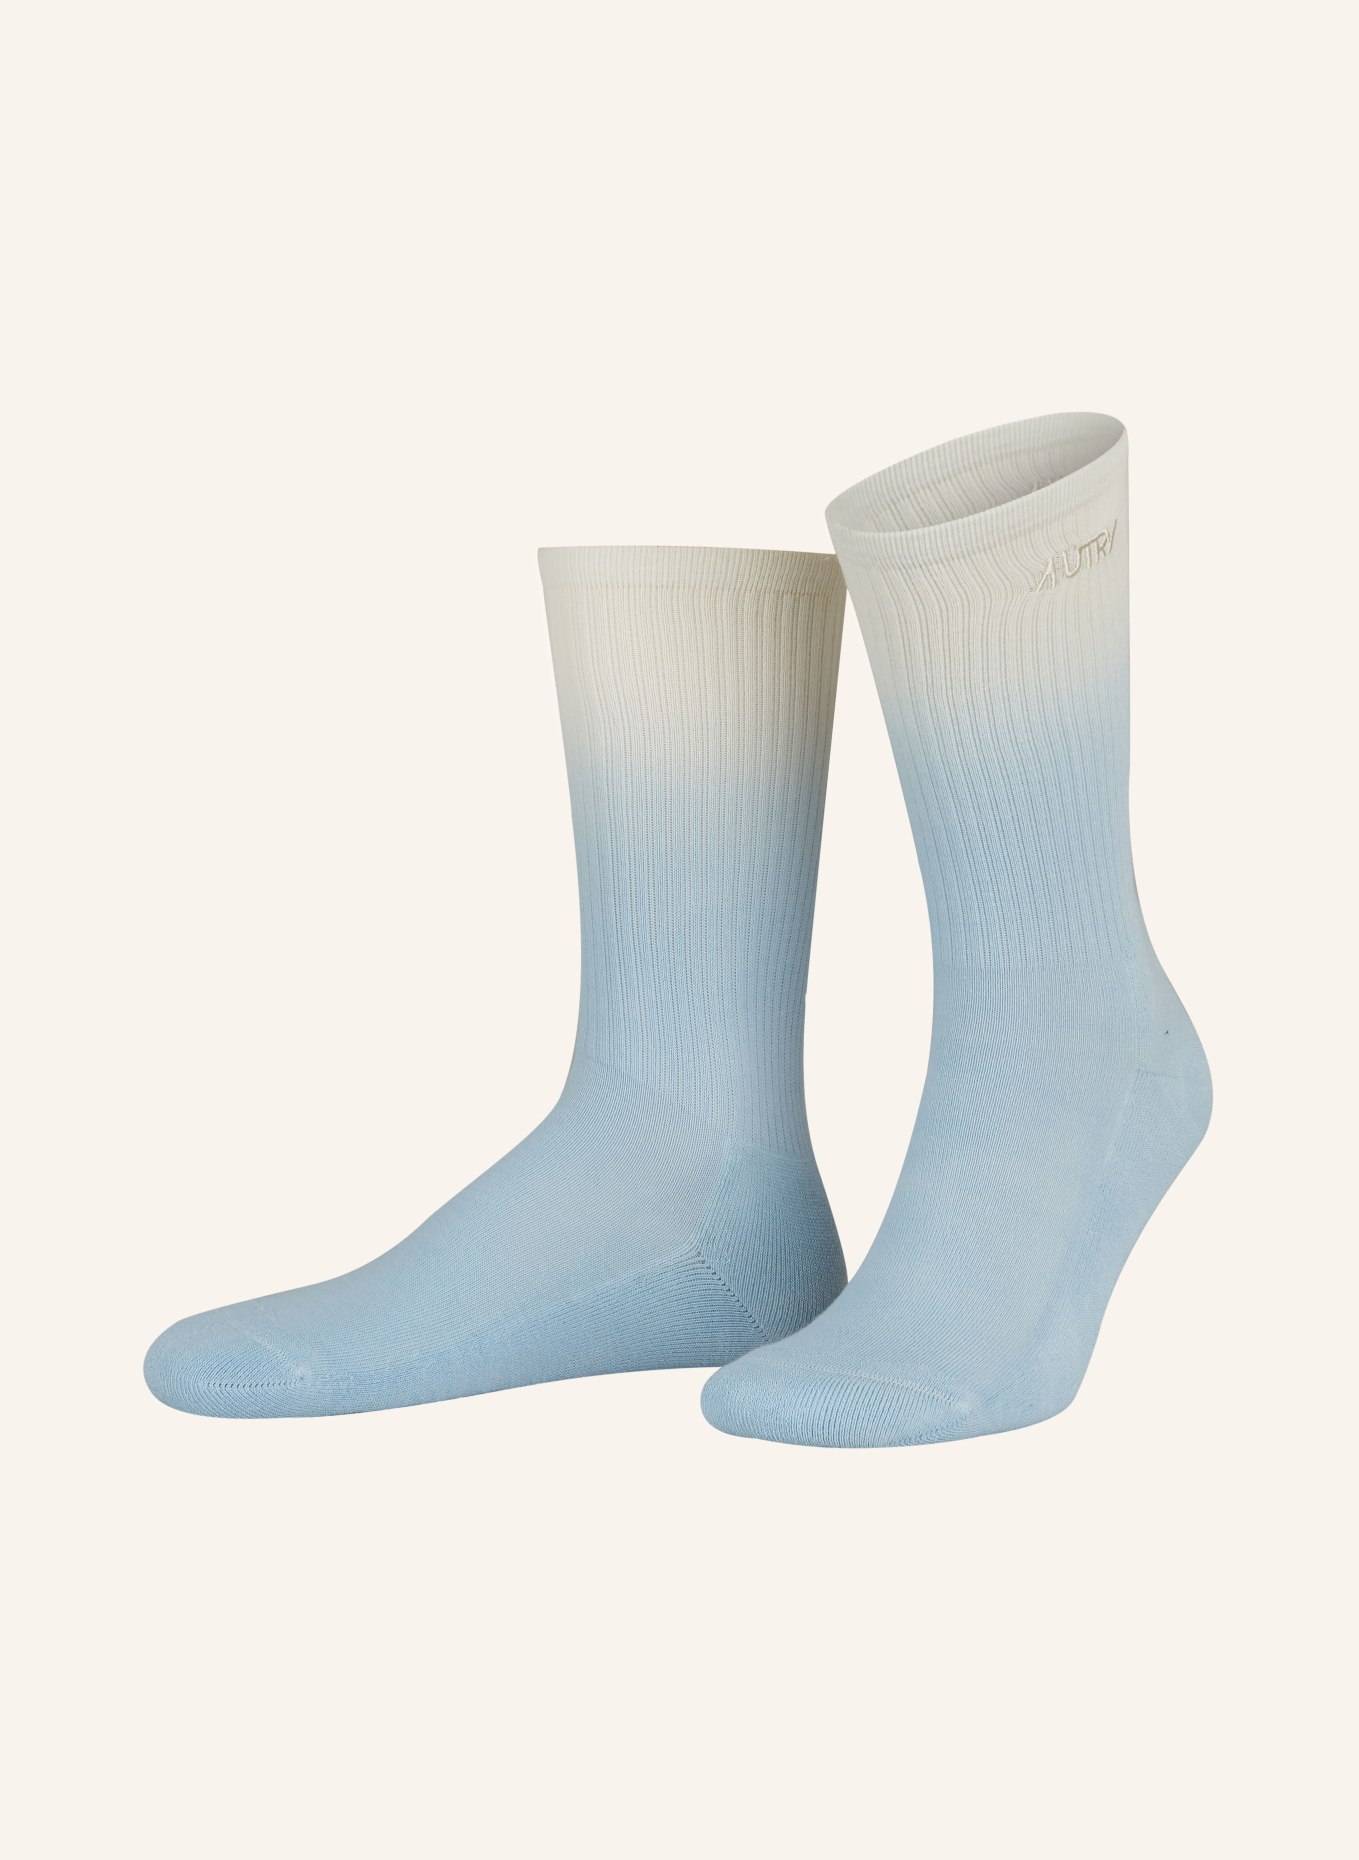 AUTRY Socks, Color: 68OA Accessories GLDN/AZU (Image 1)